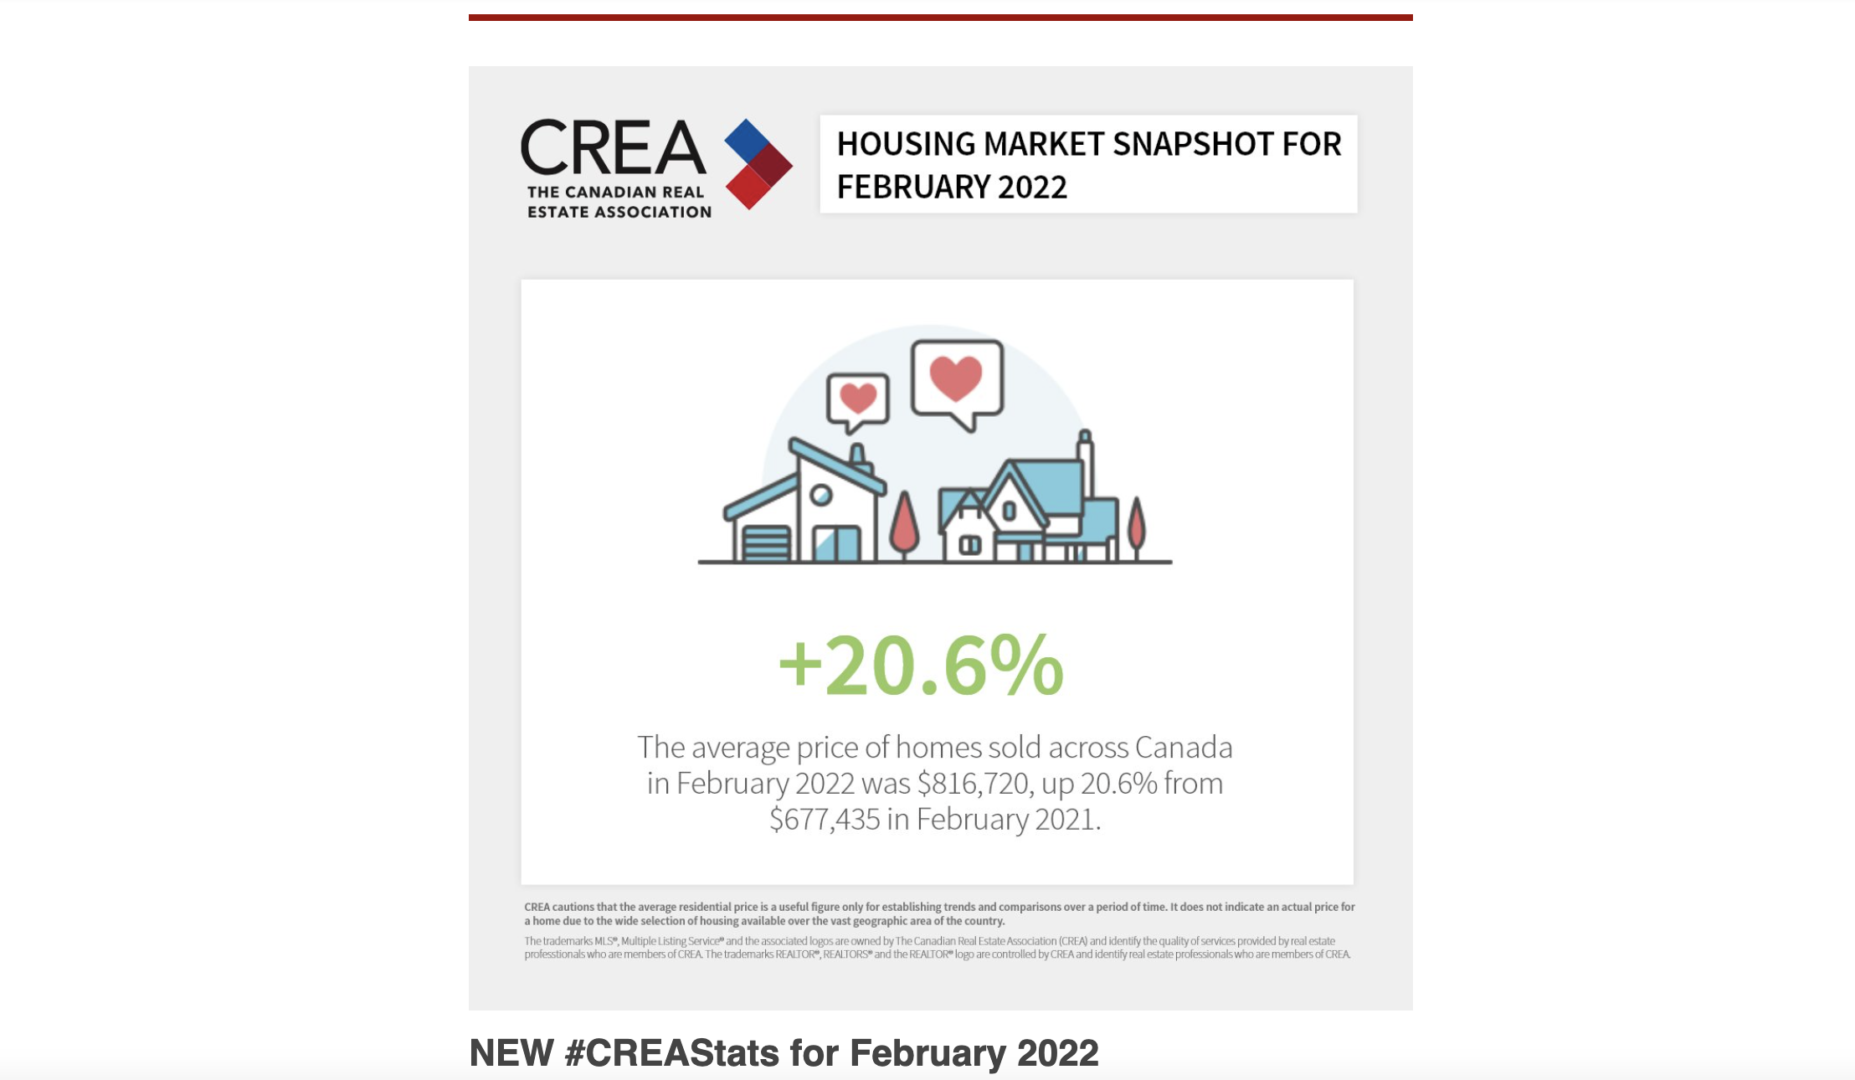 Housing Market Snapshot for February 2022